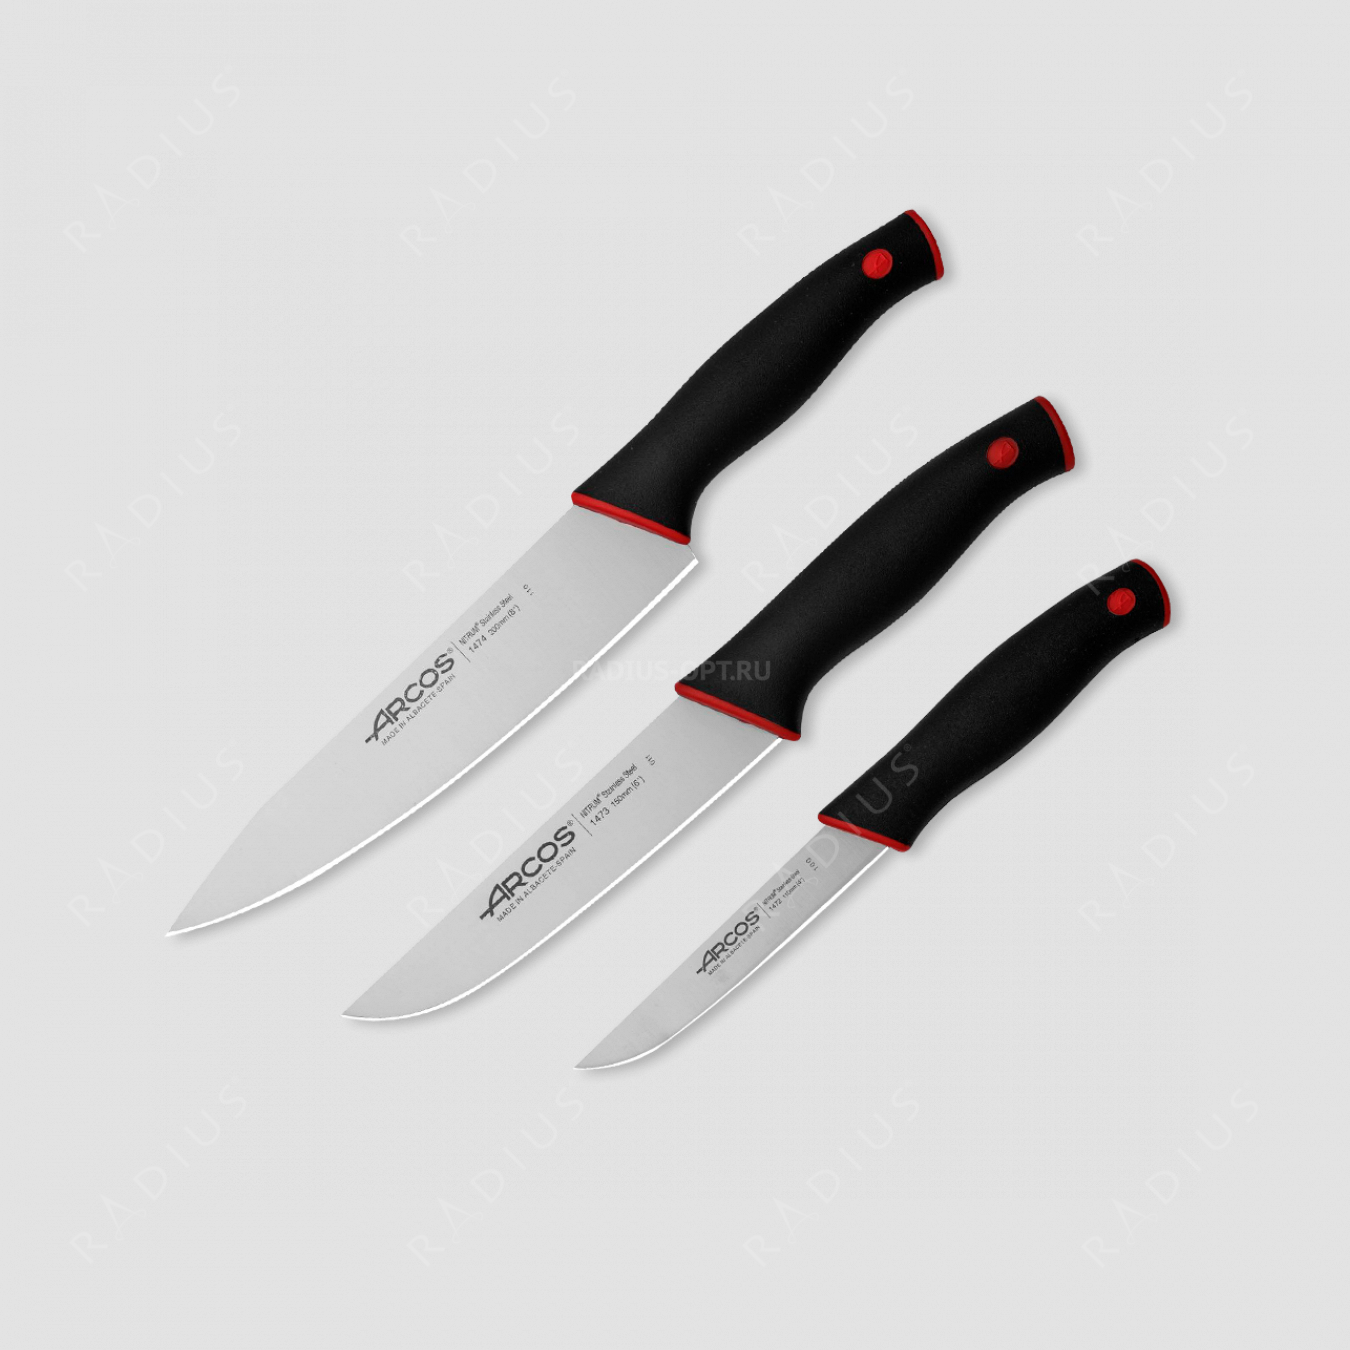 Набор кухонных ножей 3 шт., серия Duo, ARCOS, Испания